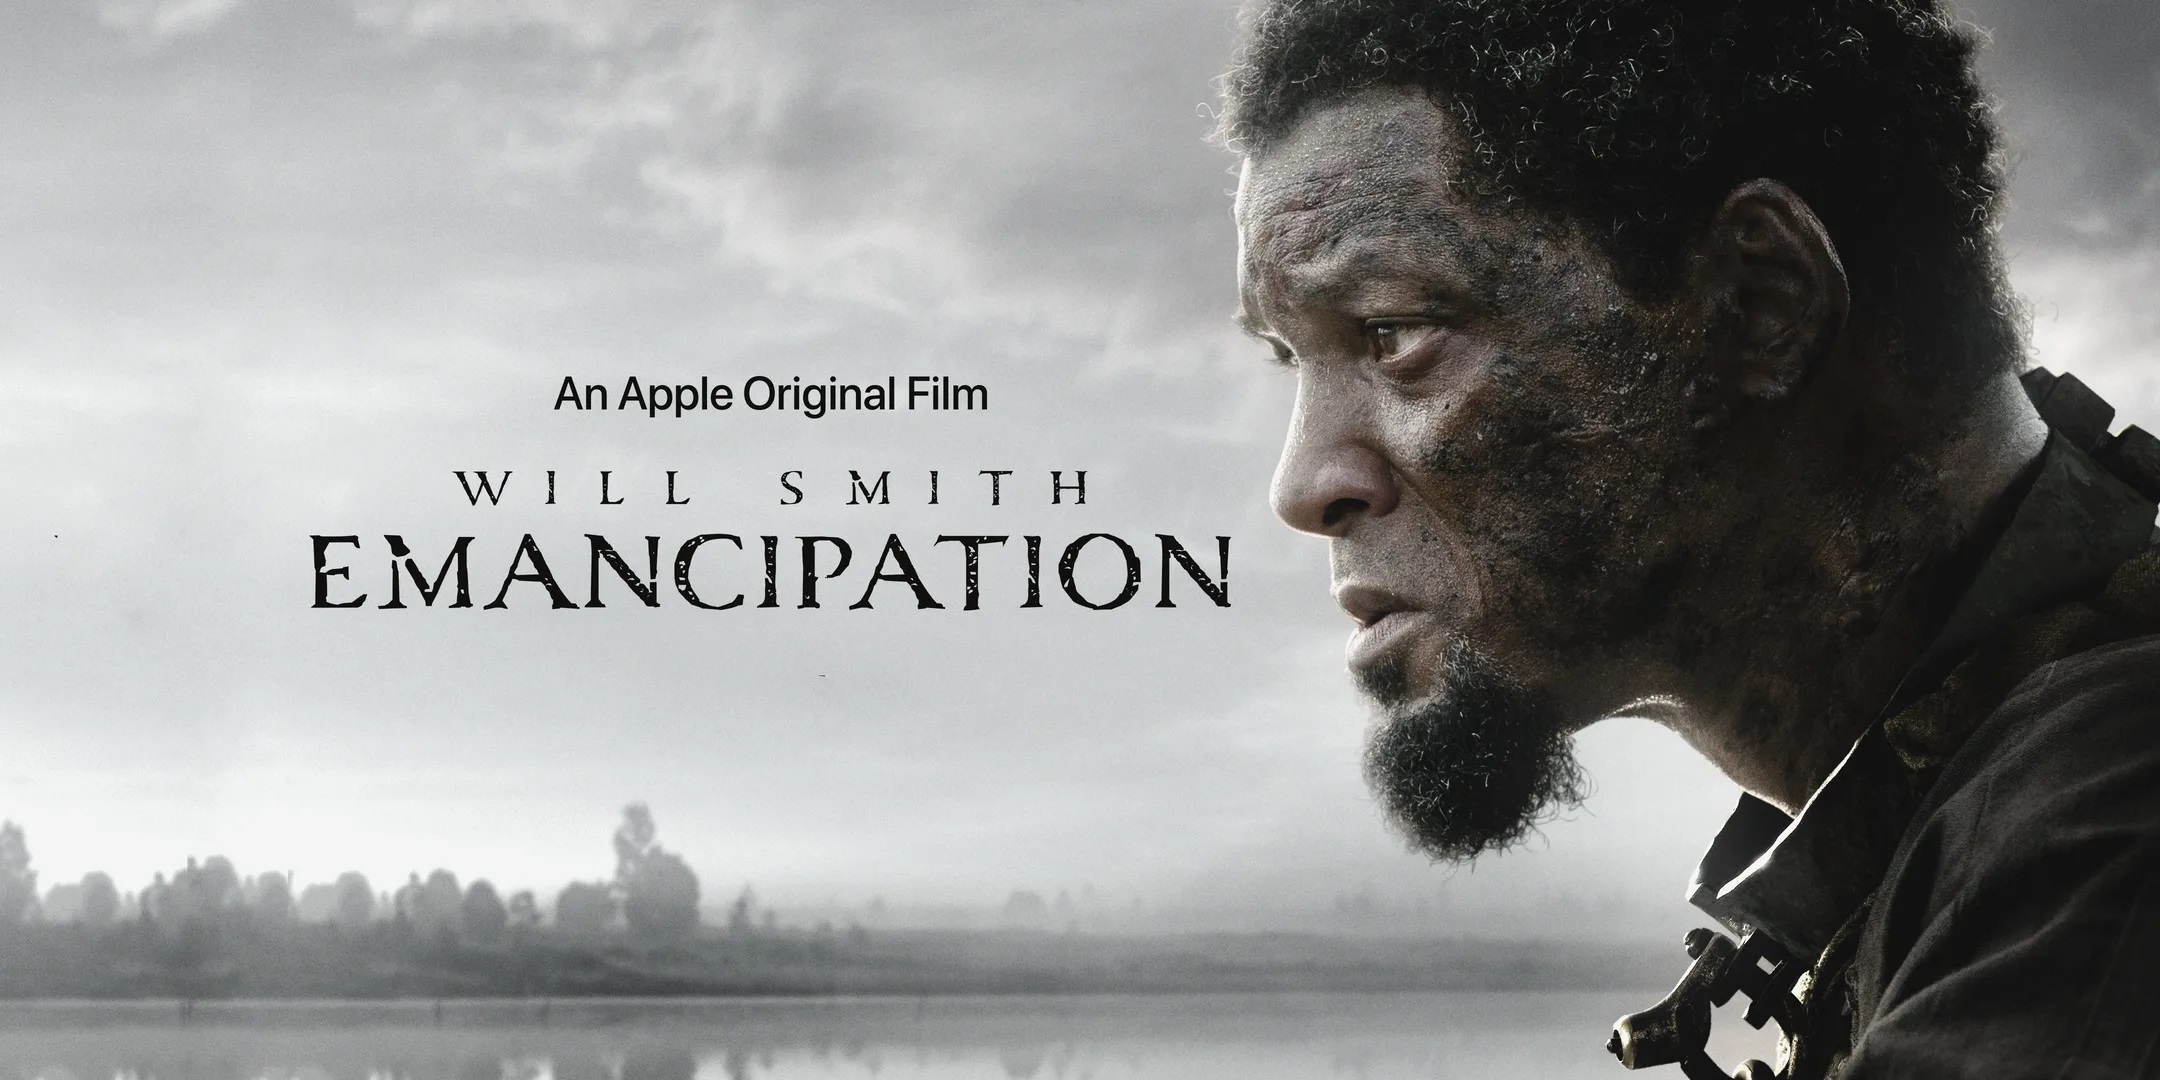 Will Smith rozdaje darmową 2-miesięczną subskrypcję Apple TV+ z okazji premiery filmu "Liberation